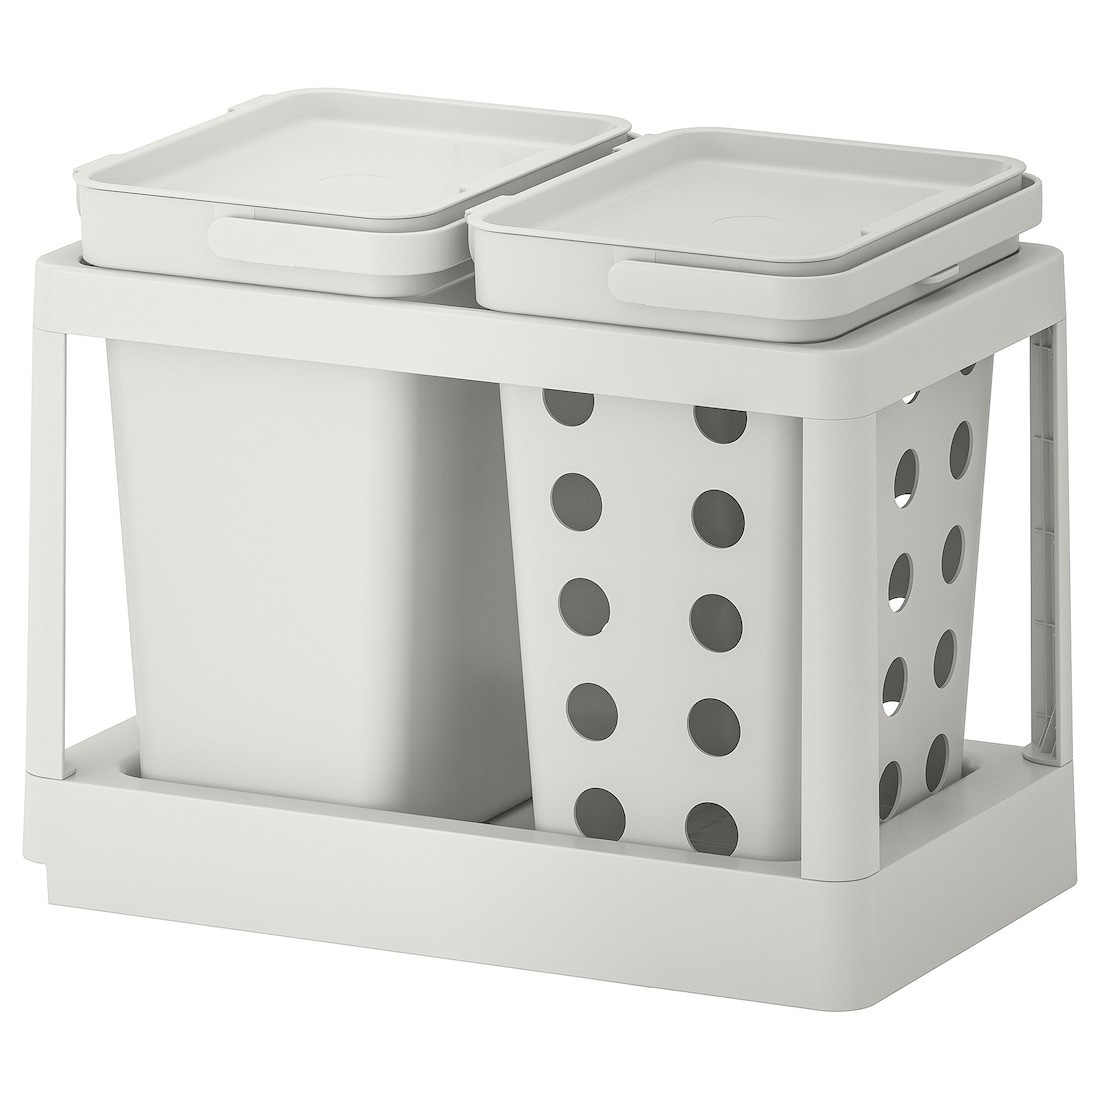 IKEA HÅLLBAR ХОЛЛБАР Решение для сортировки мусора, с выдвижным ящиком вентилируемый / светло-серый, 20 л 99308816 993.088.16